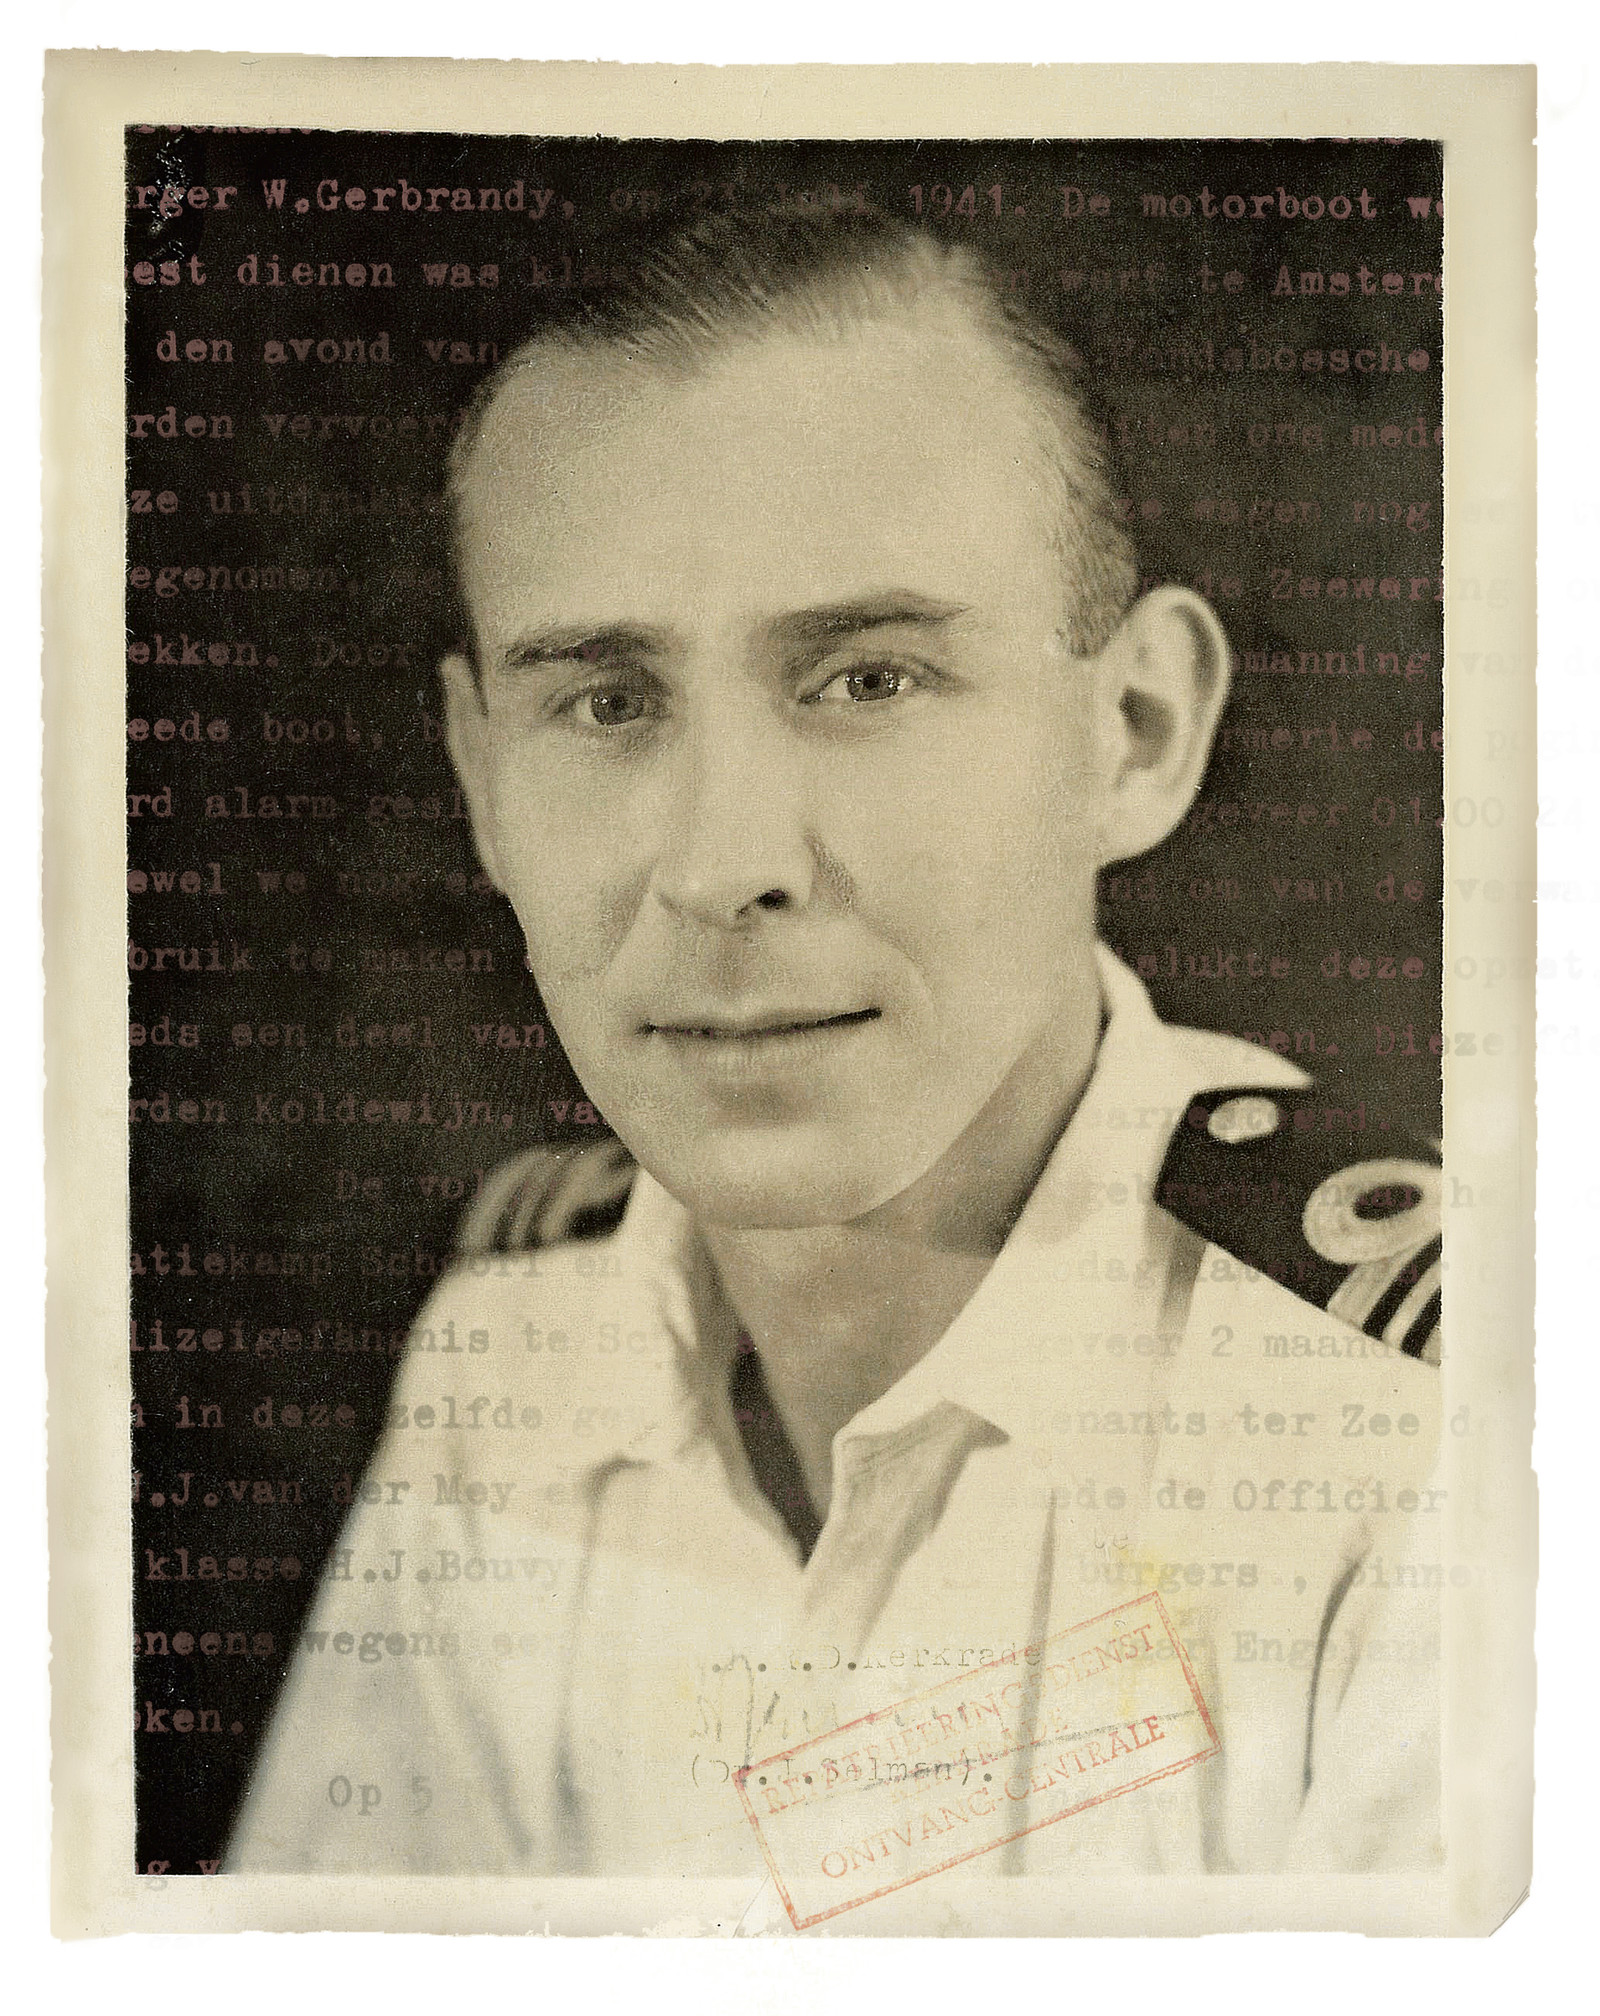 Wijnand Langeraar, de grootvader van Pieter Hotse Smit, op een ongedateerde foto - vermoedelijk kort na de Tweede Wereldoorlog. Beeld .